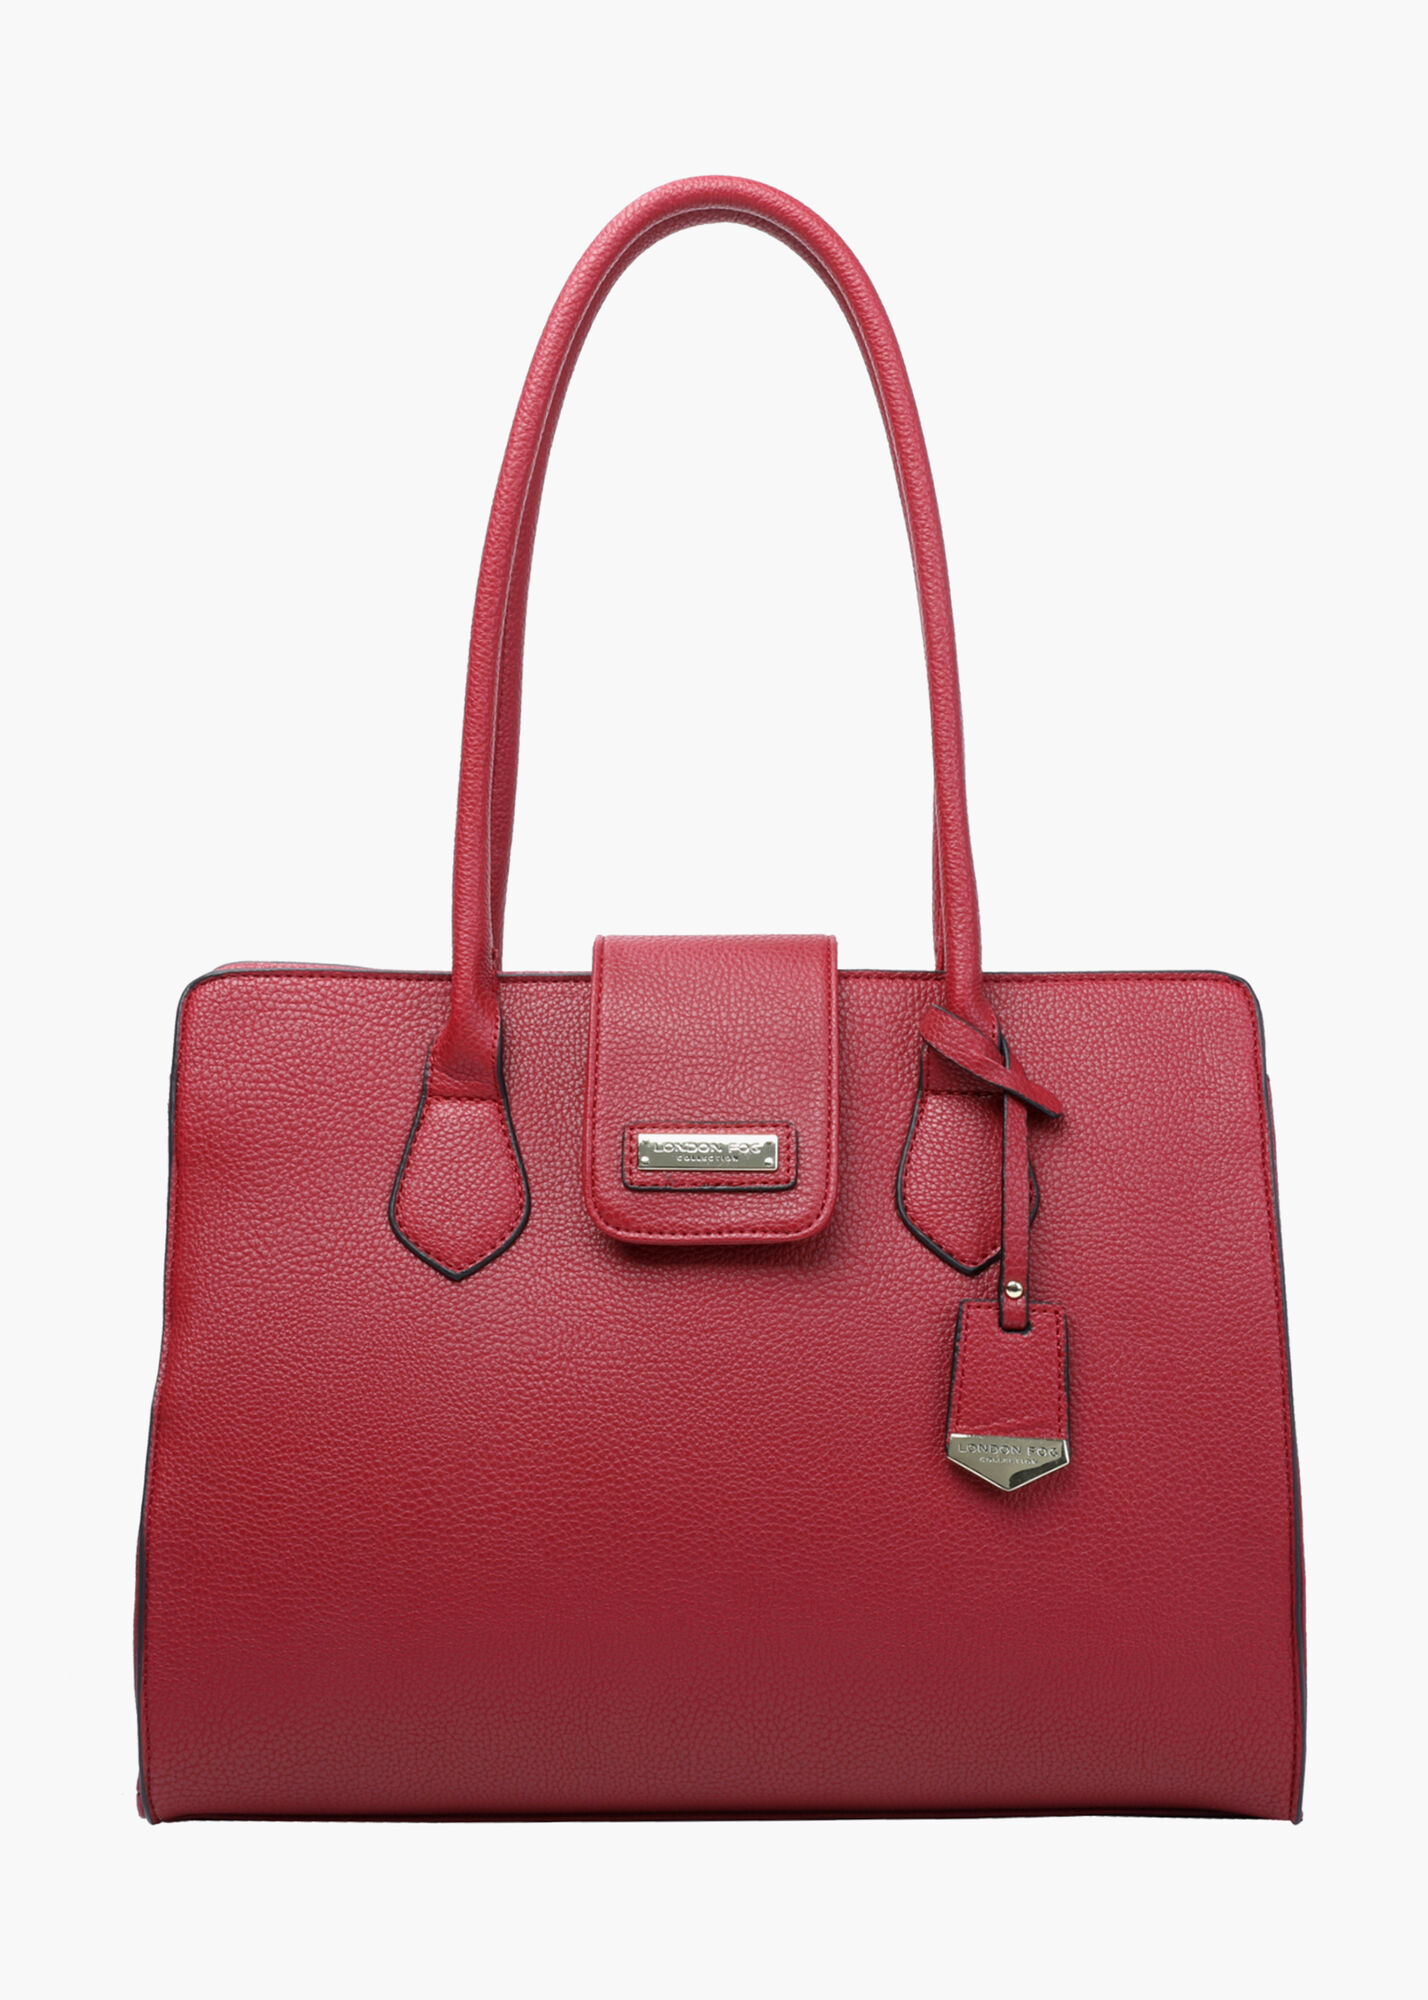 luxe handbags